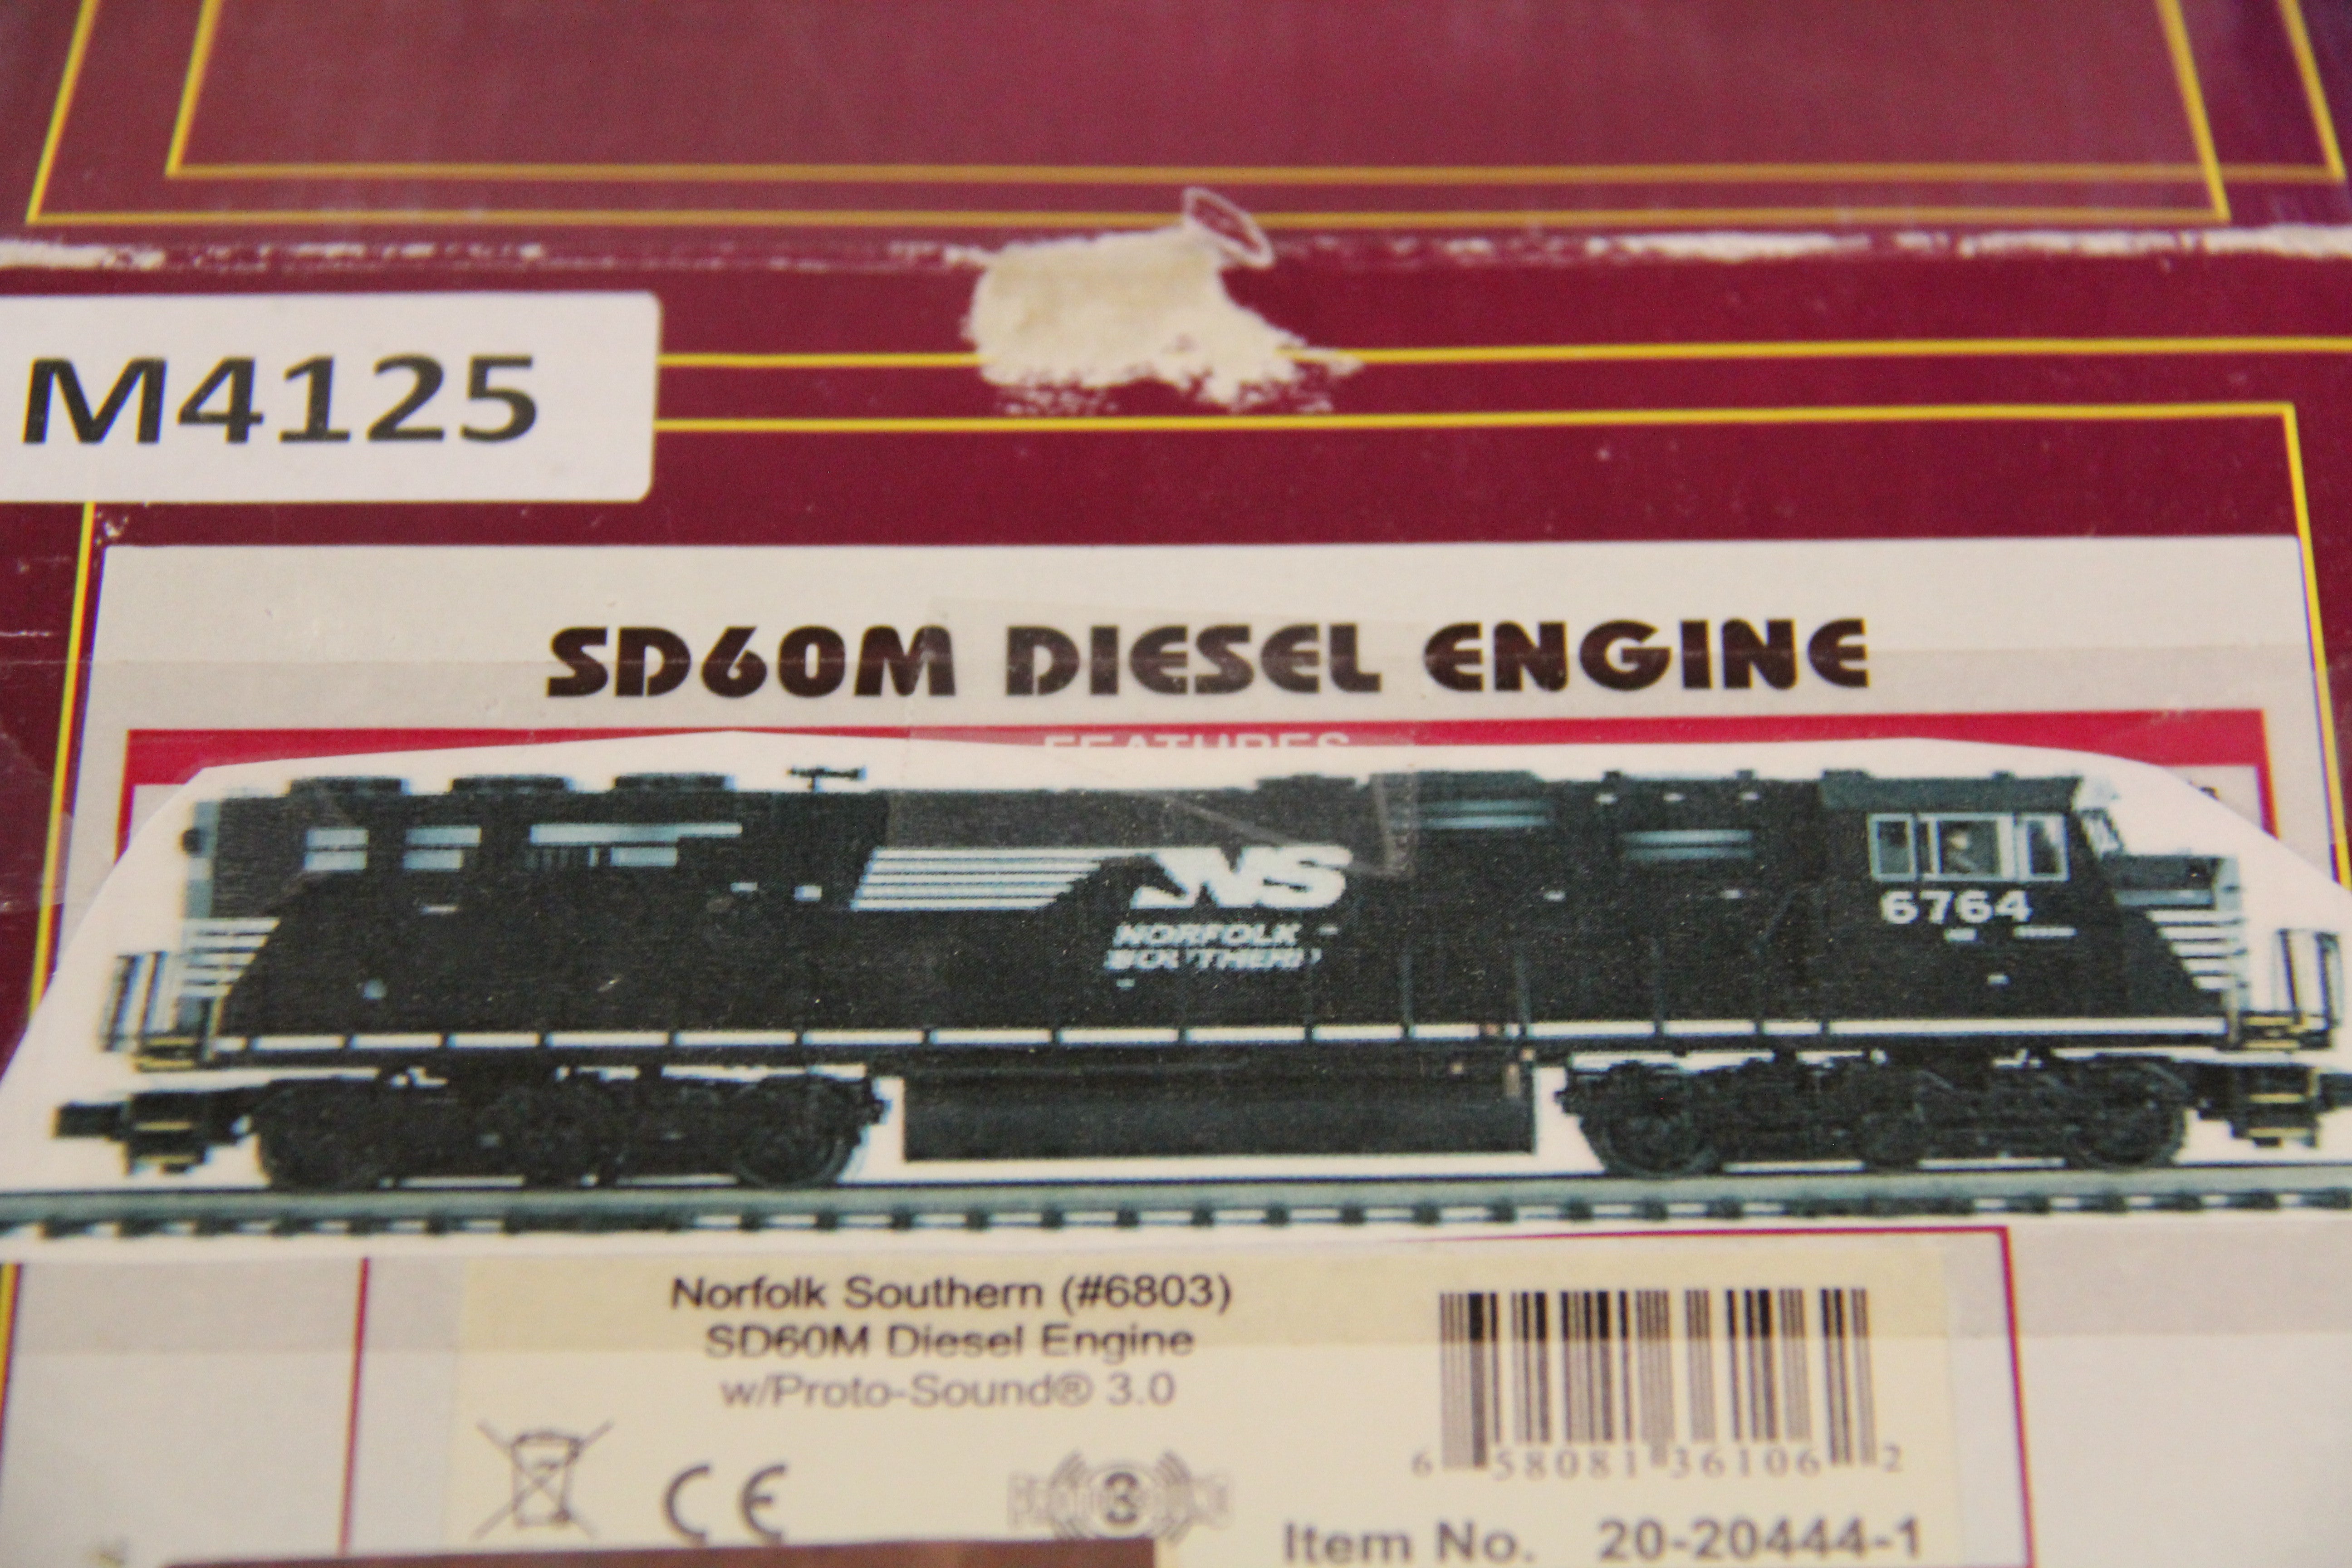 MTH 20-20444-1 Norfolk Southern #6803 SD60M Diesel Engine-Second hand-M4125